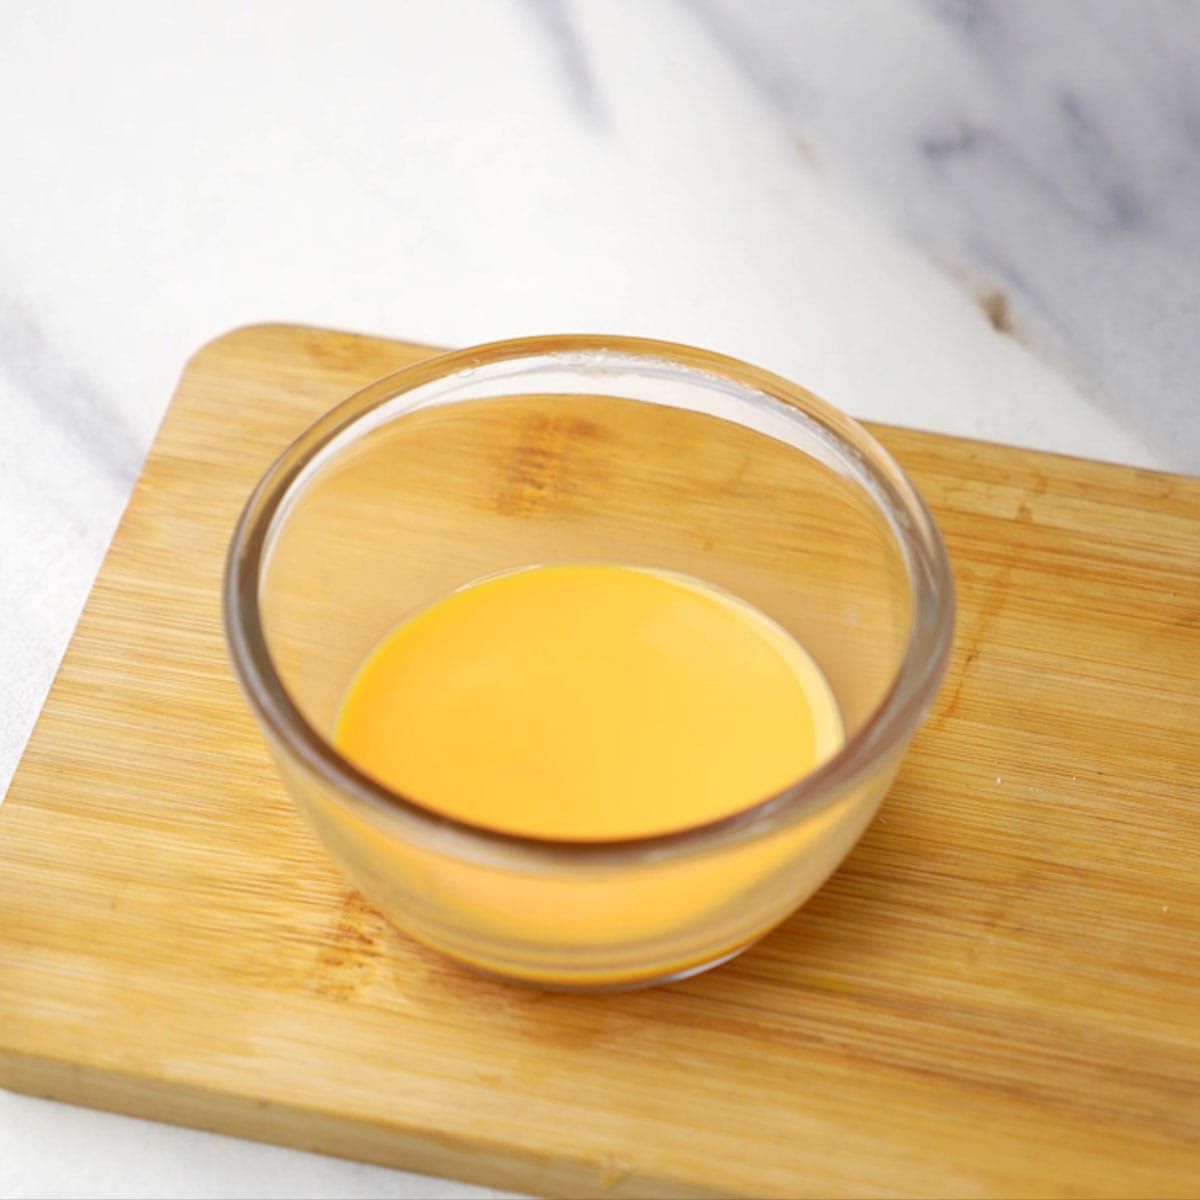 Ready saffron milk in a glass bowl